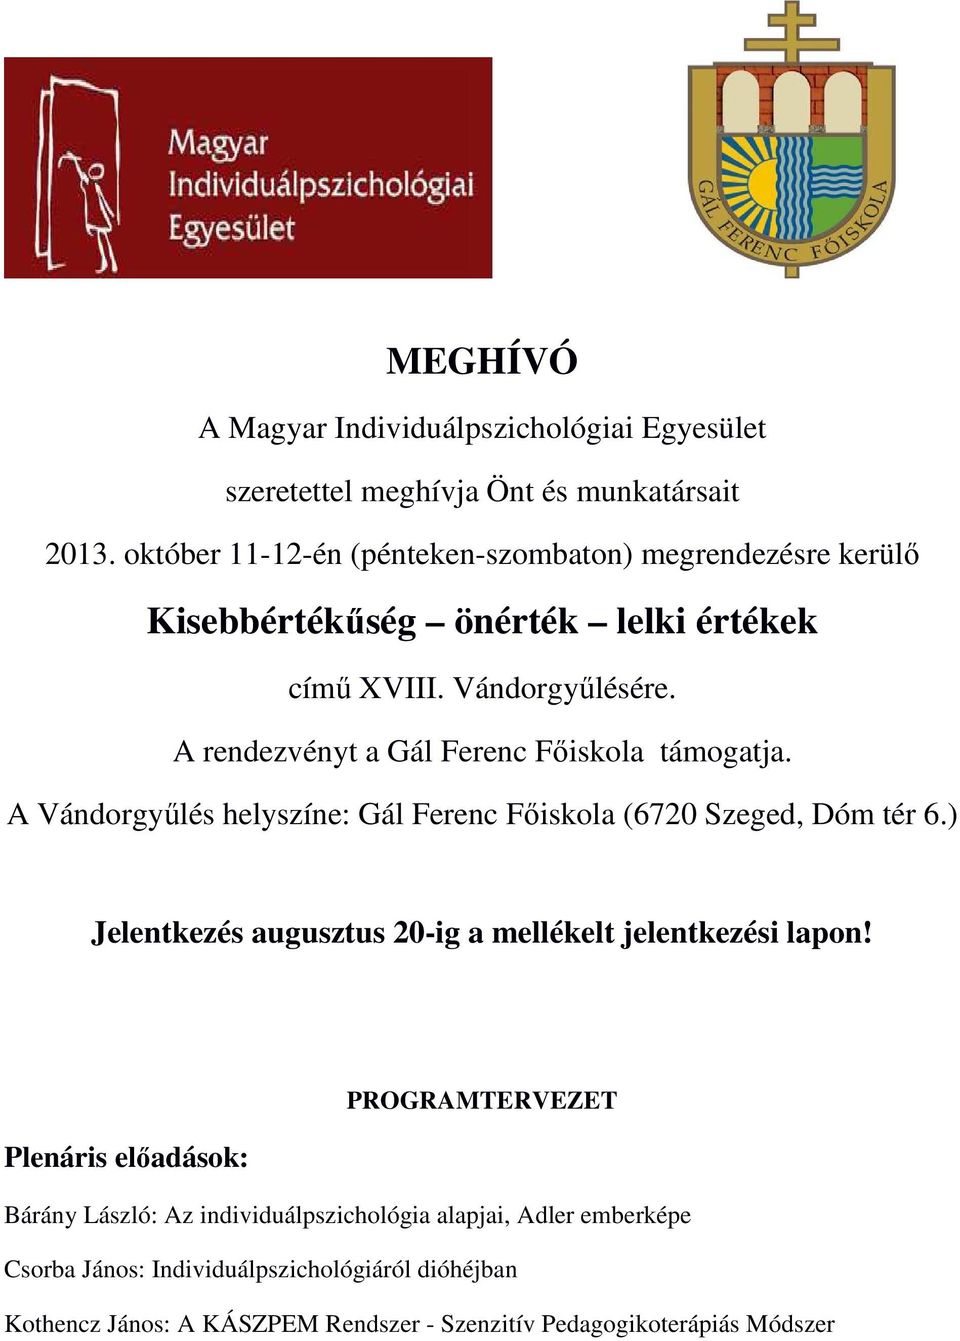 A rendezvényt a Gál Ferenc Fıiskola támogatja. A Vándorgyőlés helyszíne: Gál Ferenc Fıiskola (6720 Szeged, Dóm tér 6.